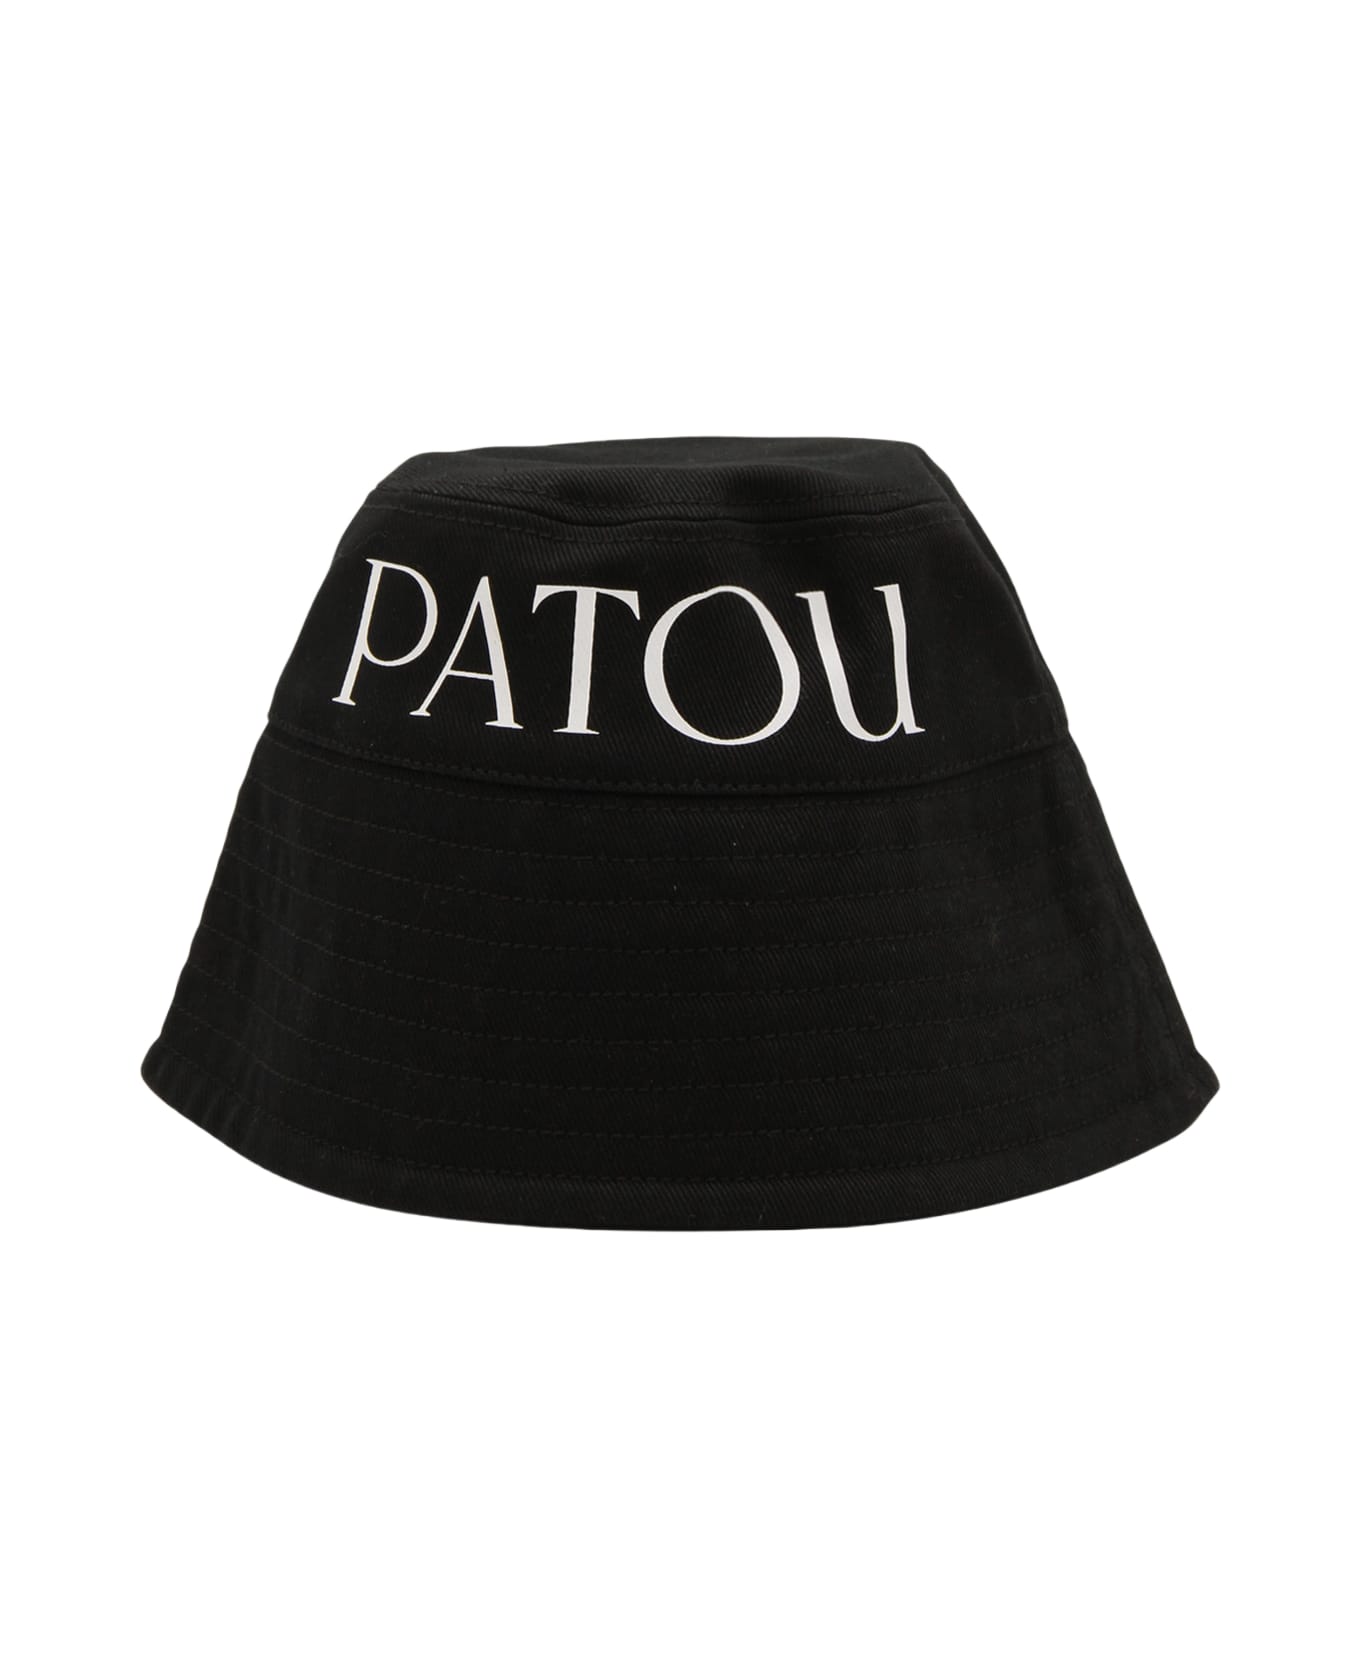 Patou Black And White Cotton Bucket Hat - Black 帽子